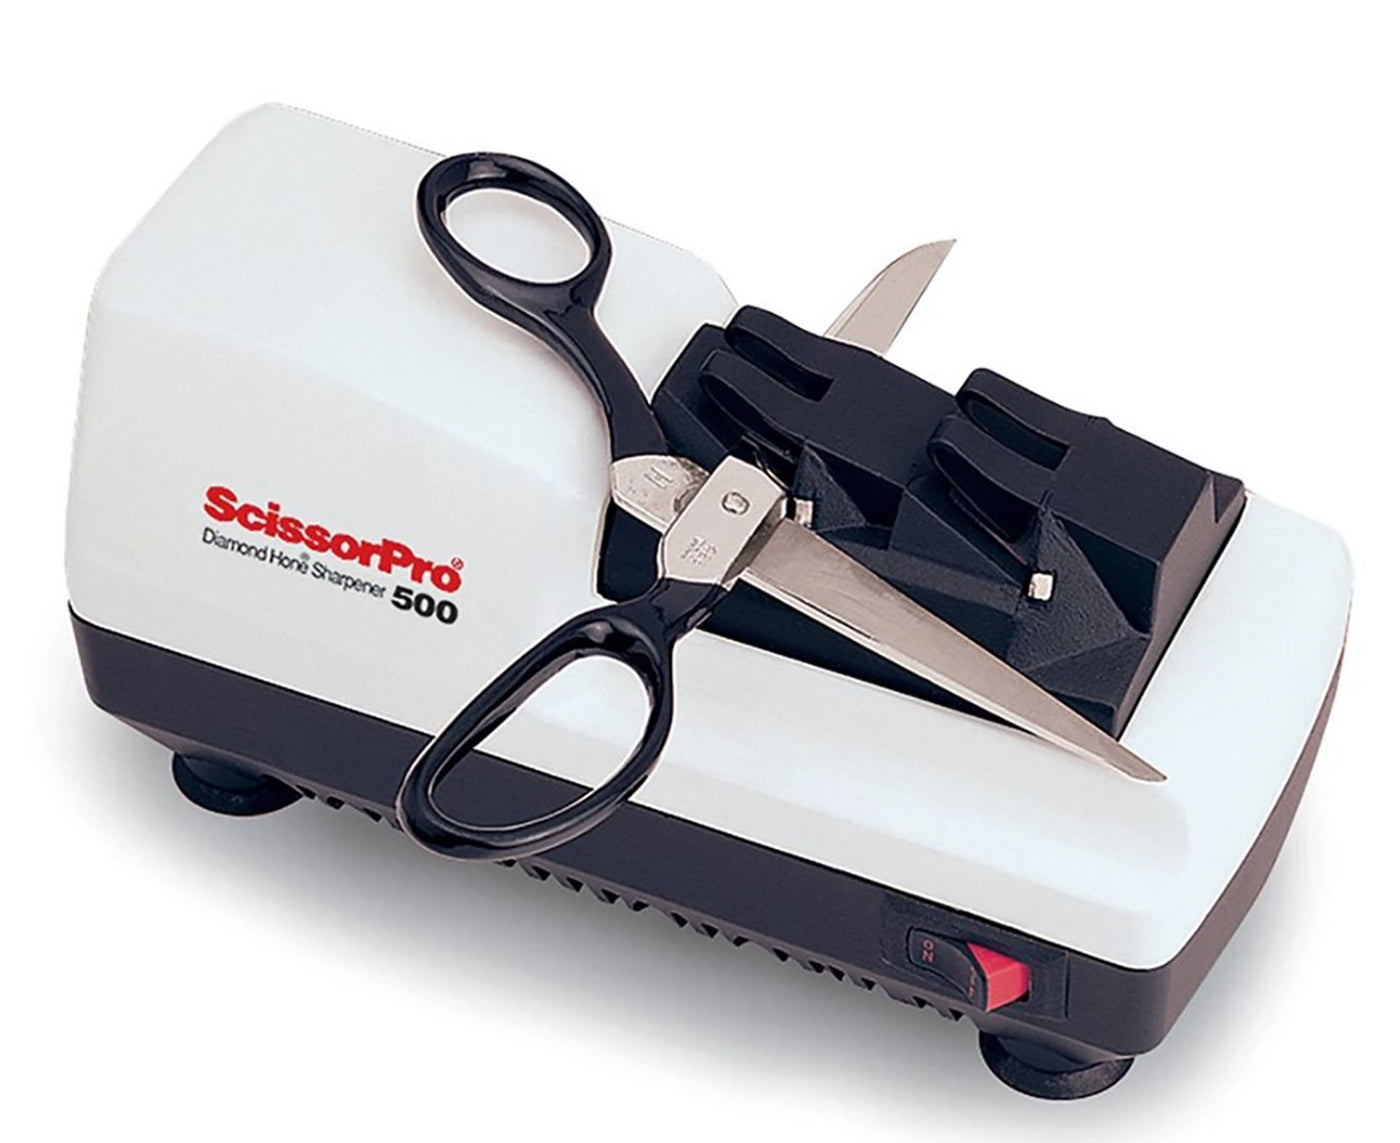 Chef'sChoice ScissorPro 2-Stage Electric Scissors Sharpener 500W